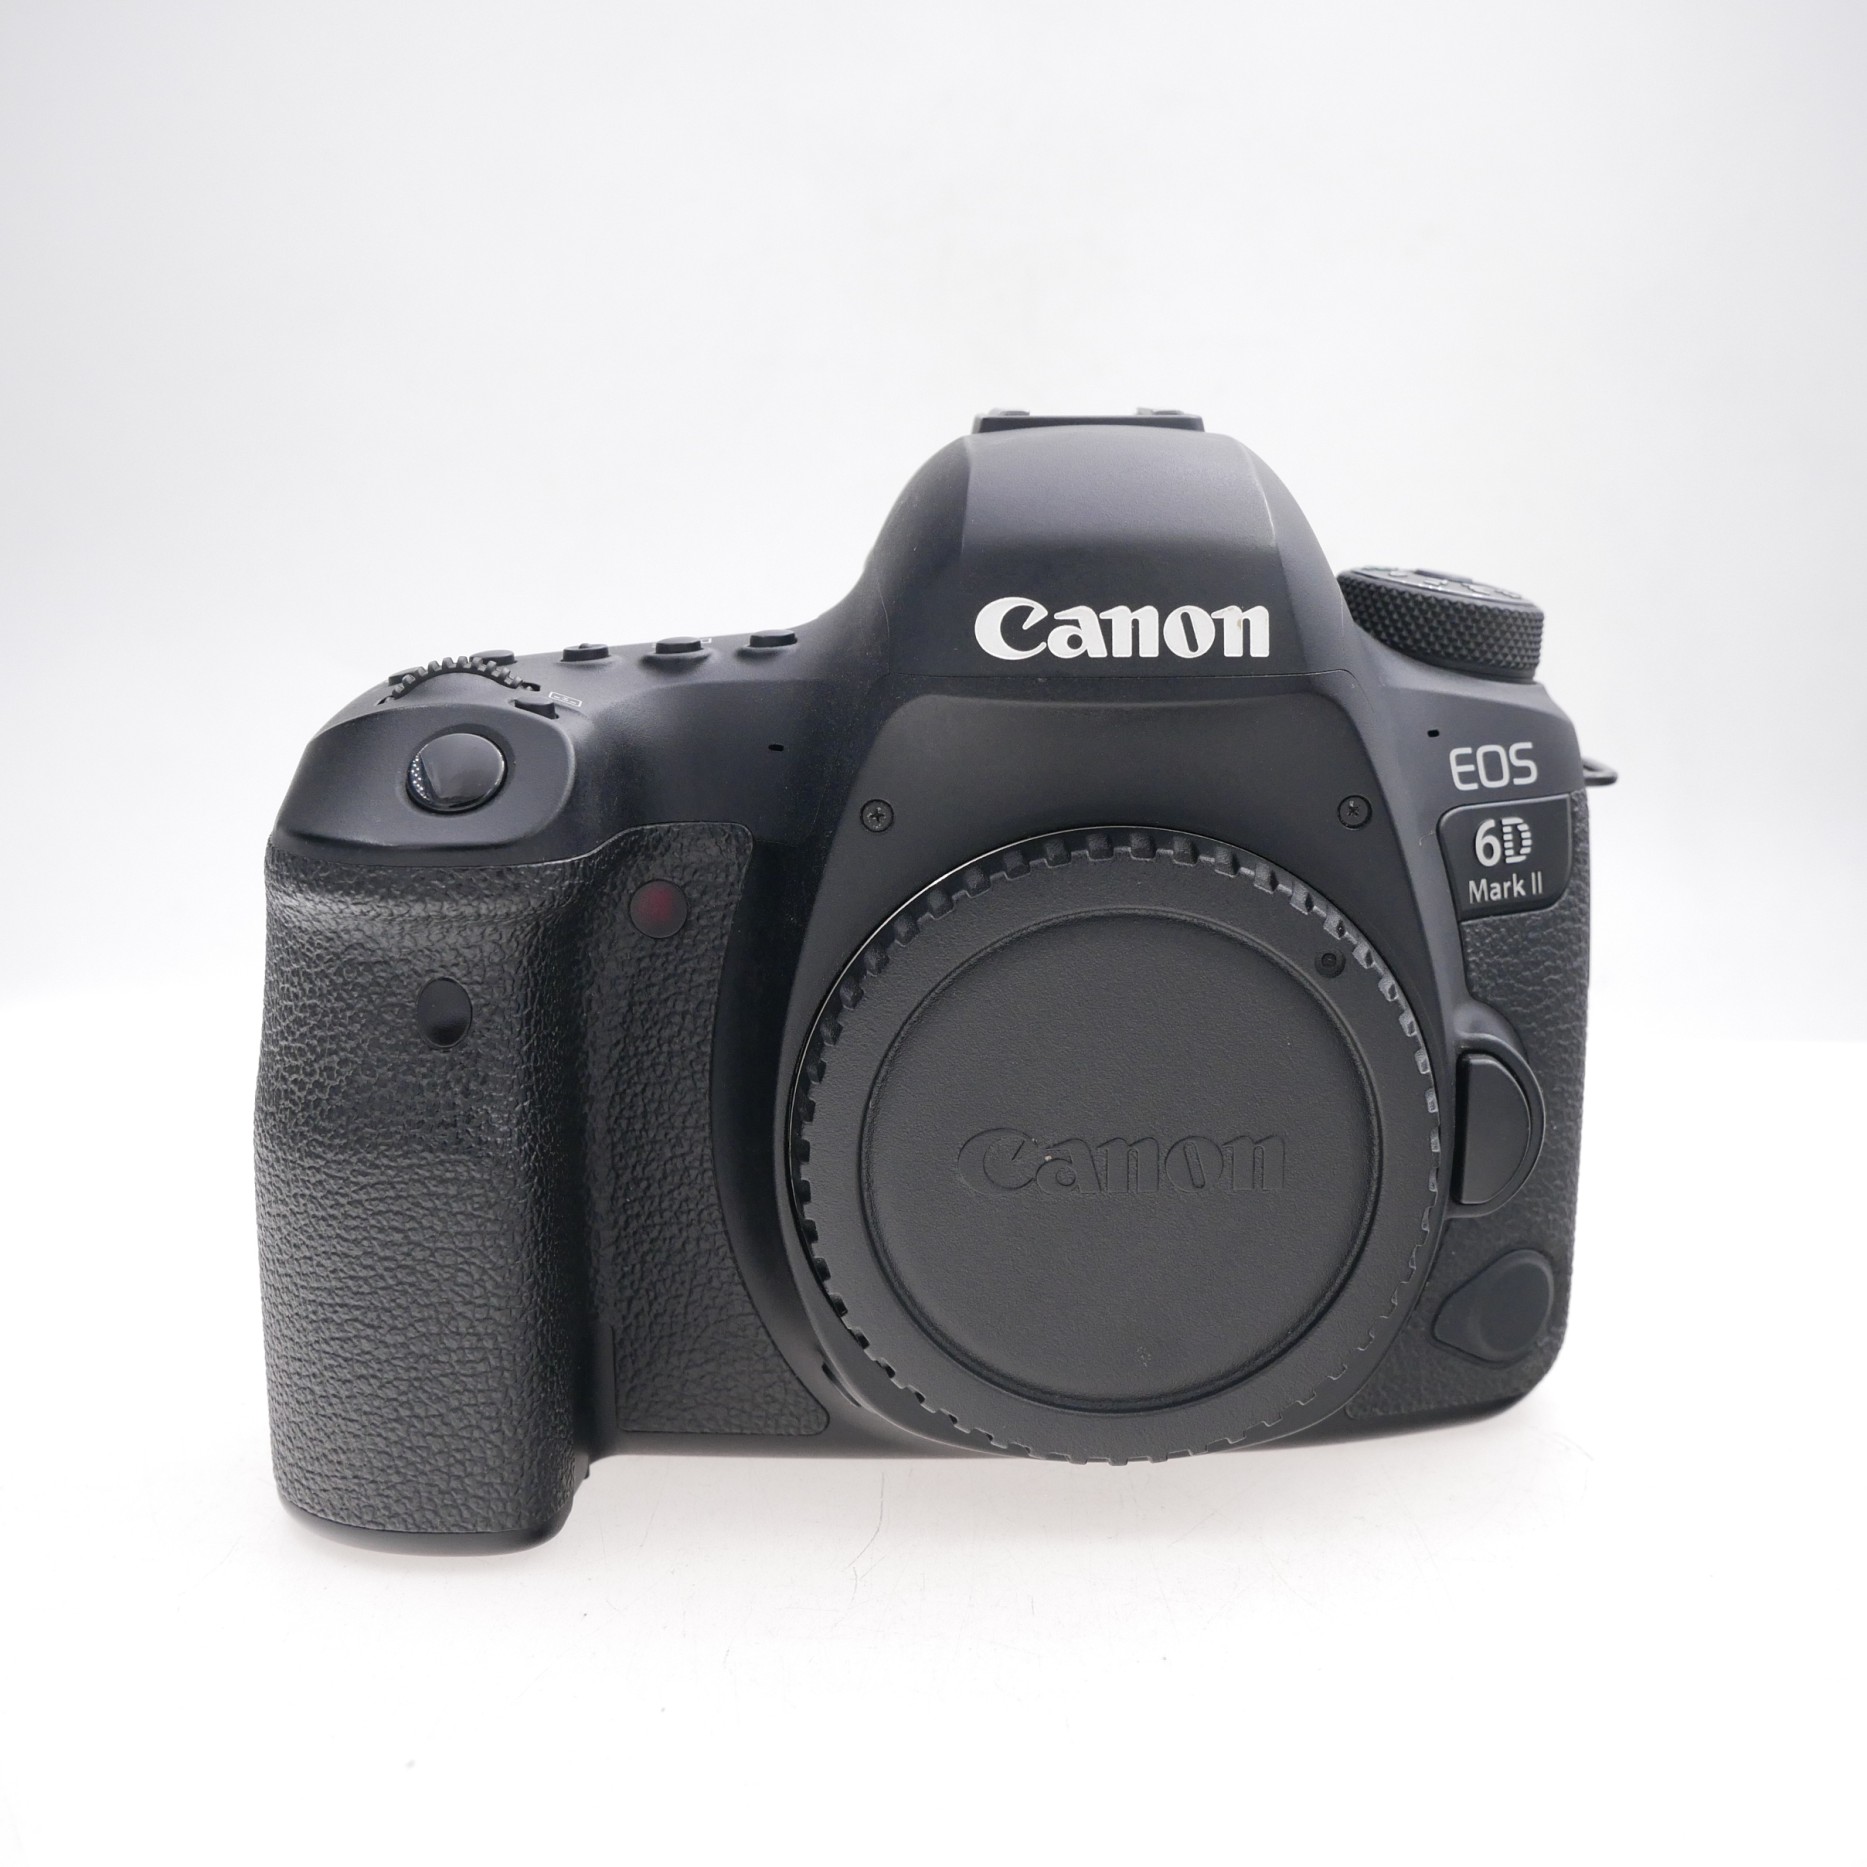 Canon EOS 6D Mk II 51,000 Frames